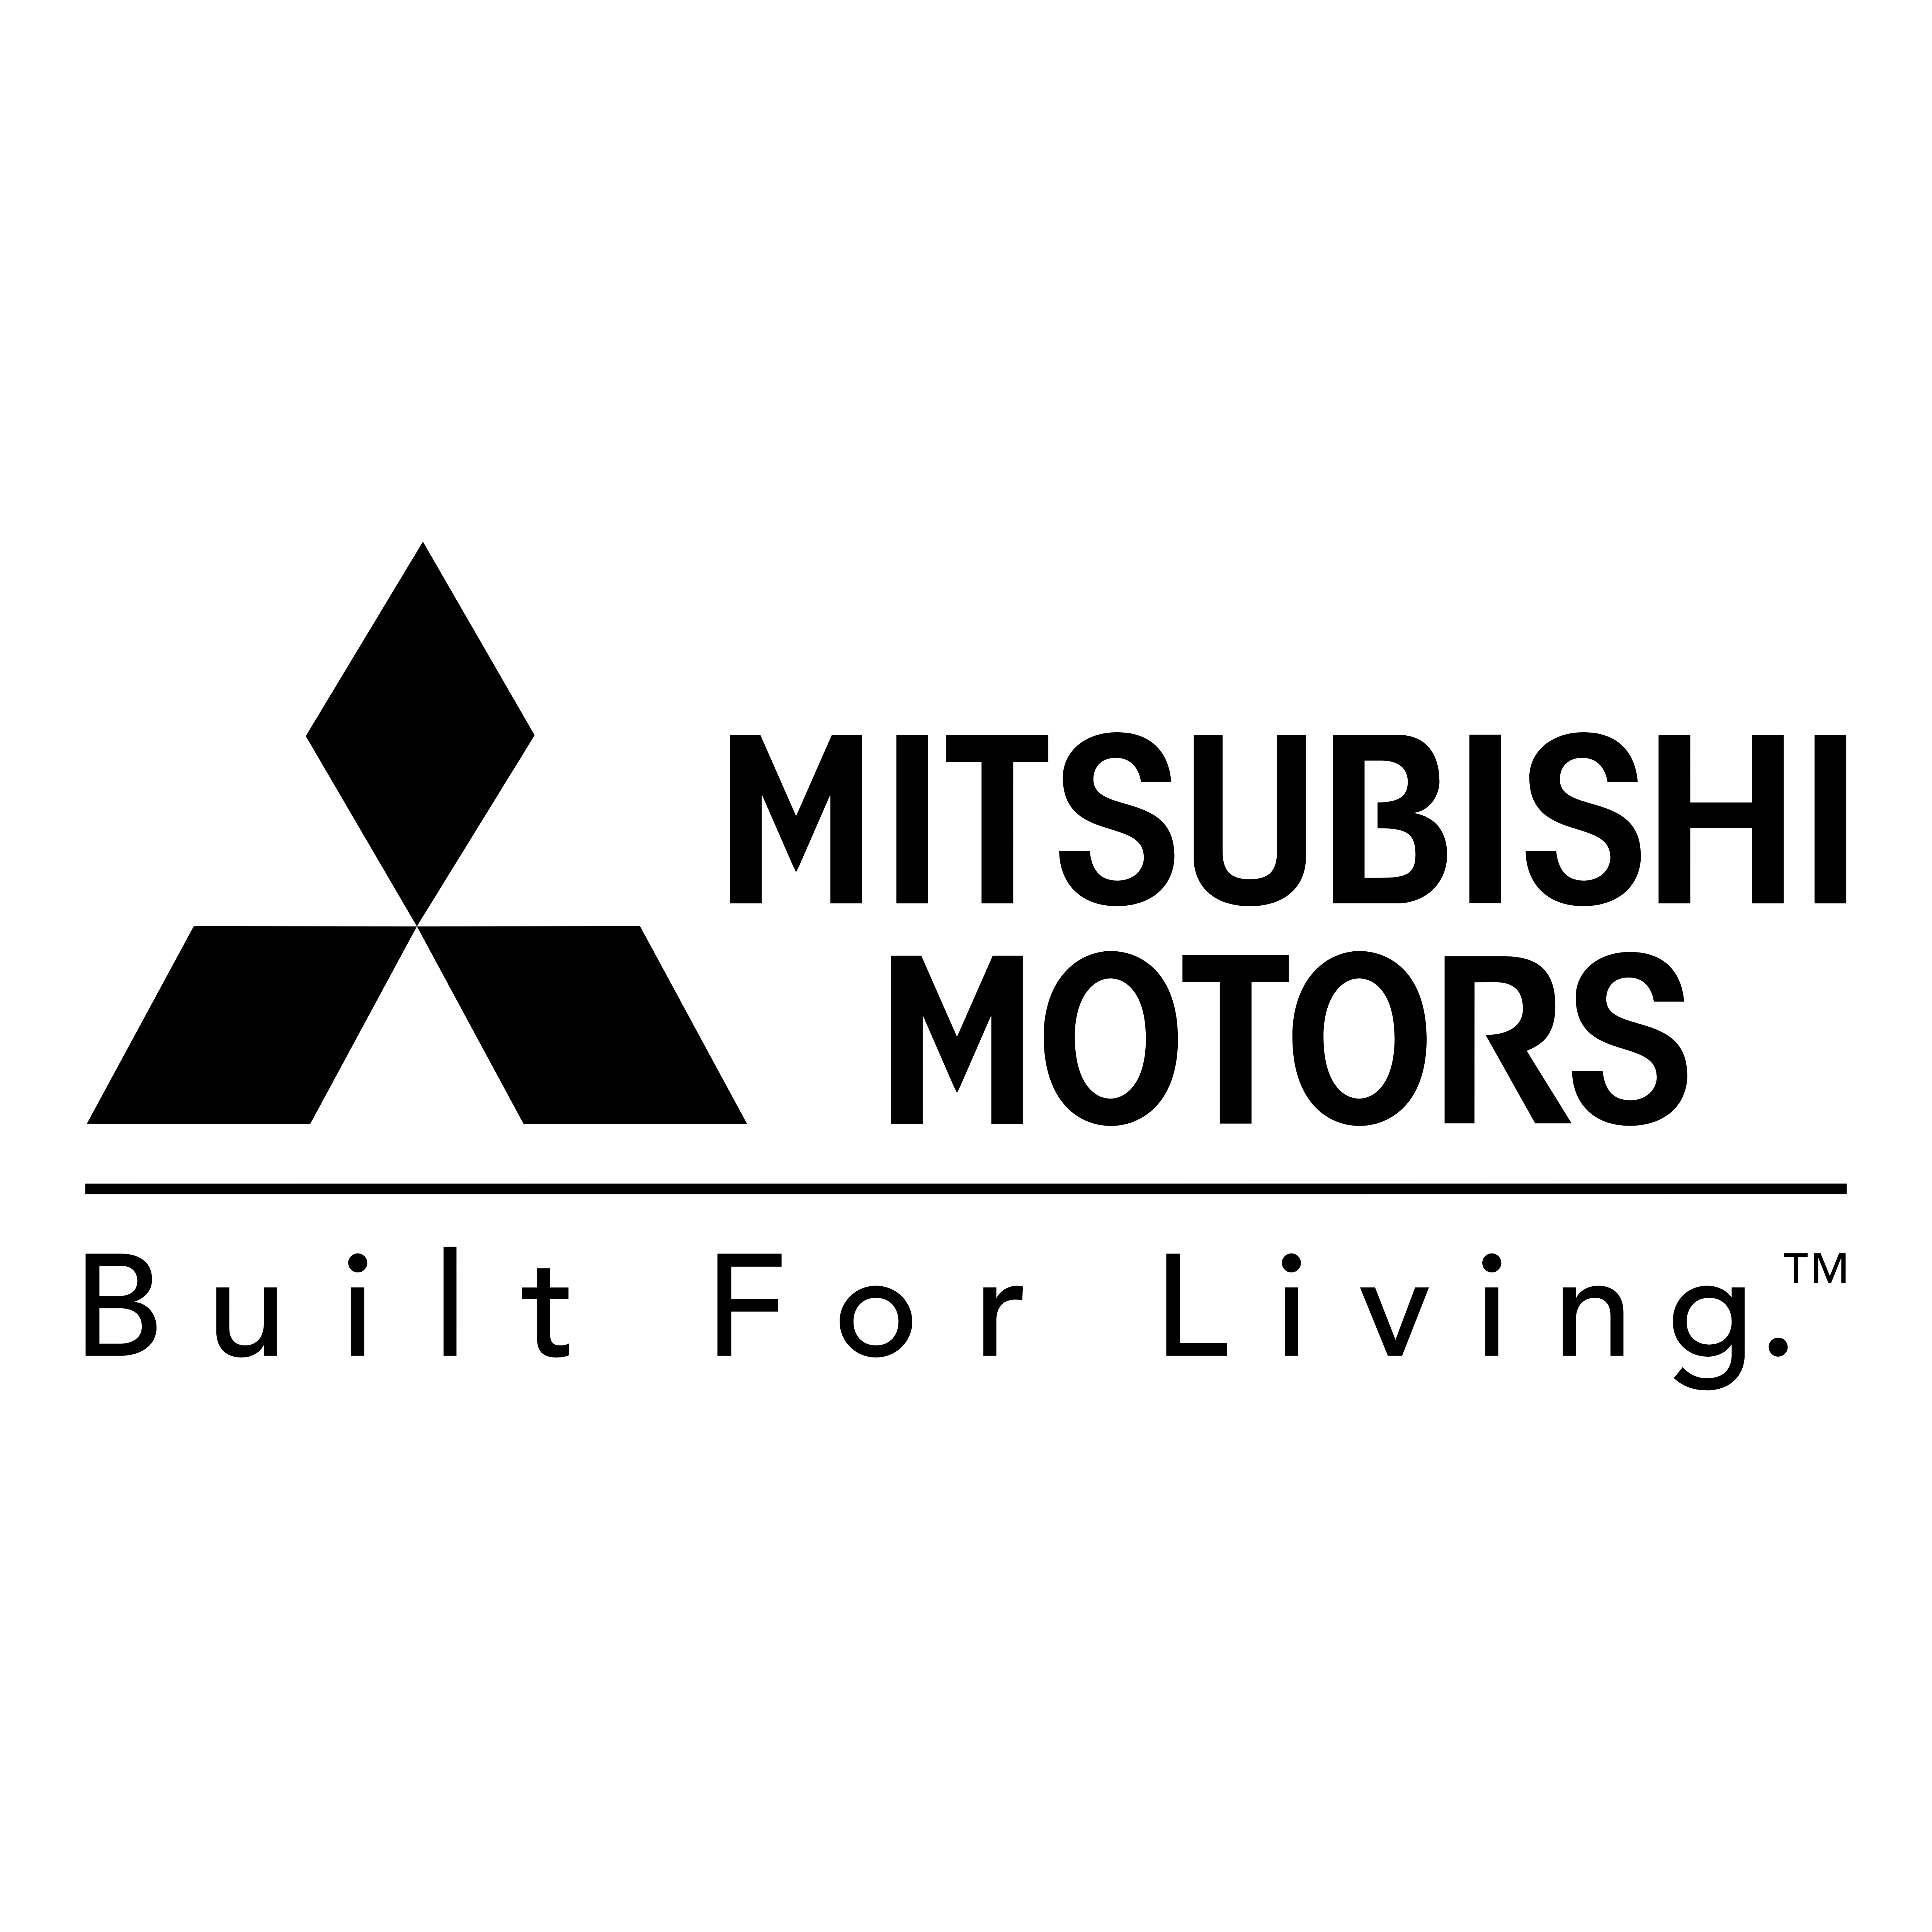 Логотип mitsubishi. Mitsubishi Motors эмблема. Митсубиши Моторс логотип. Значки Митсубиси Моторс. Митсуписи мотор логоип.